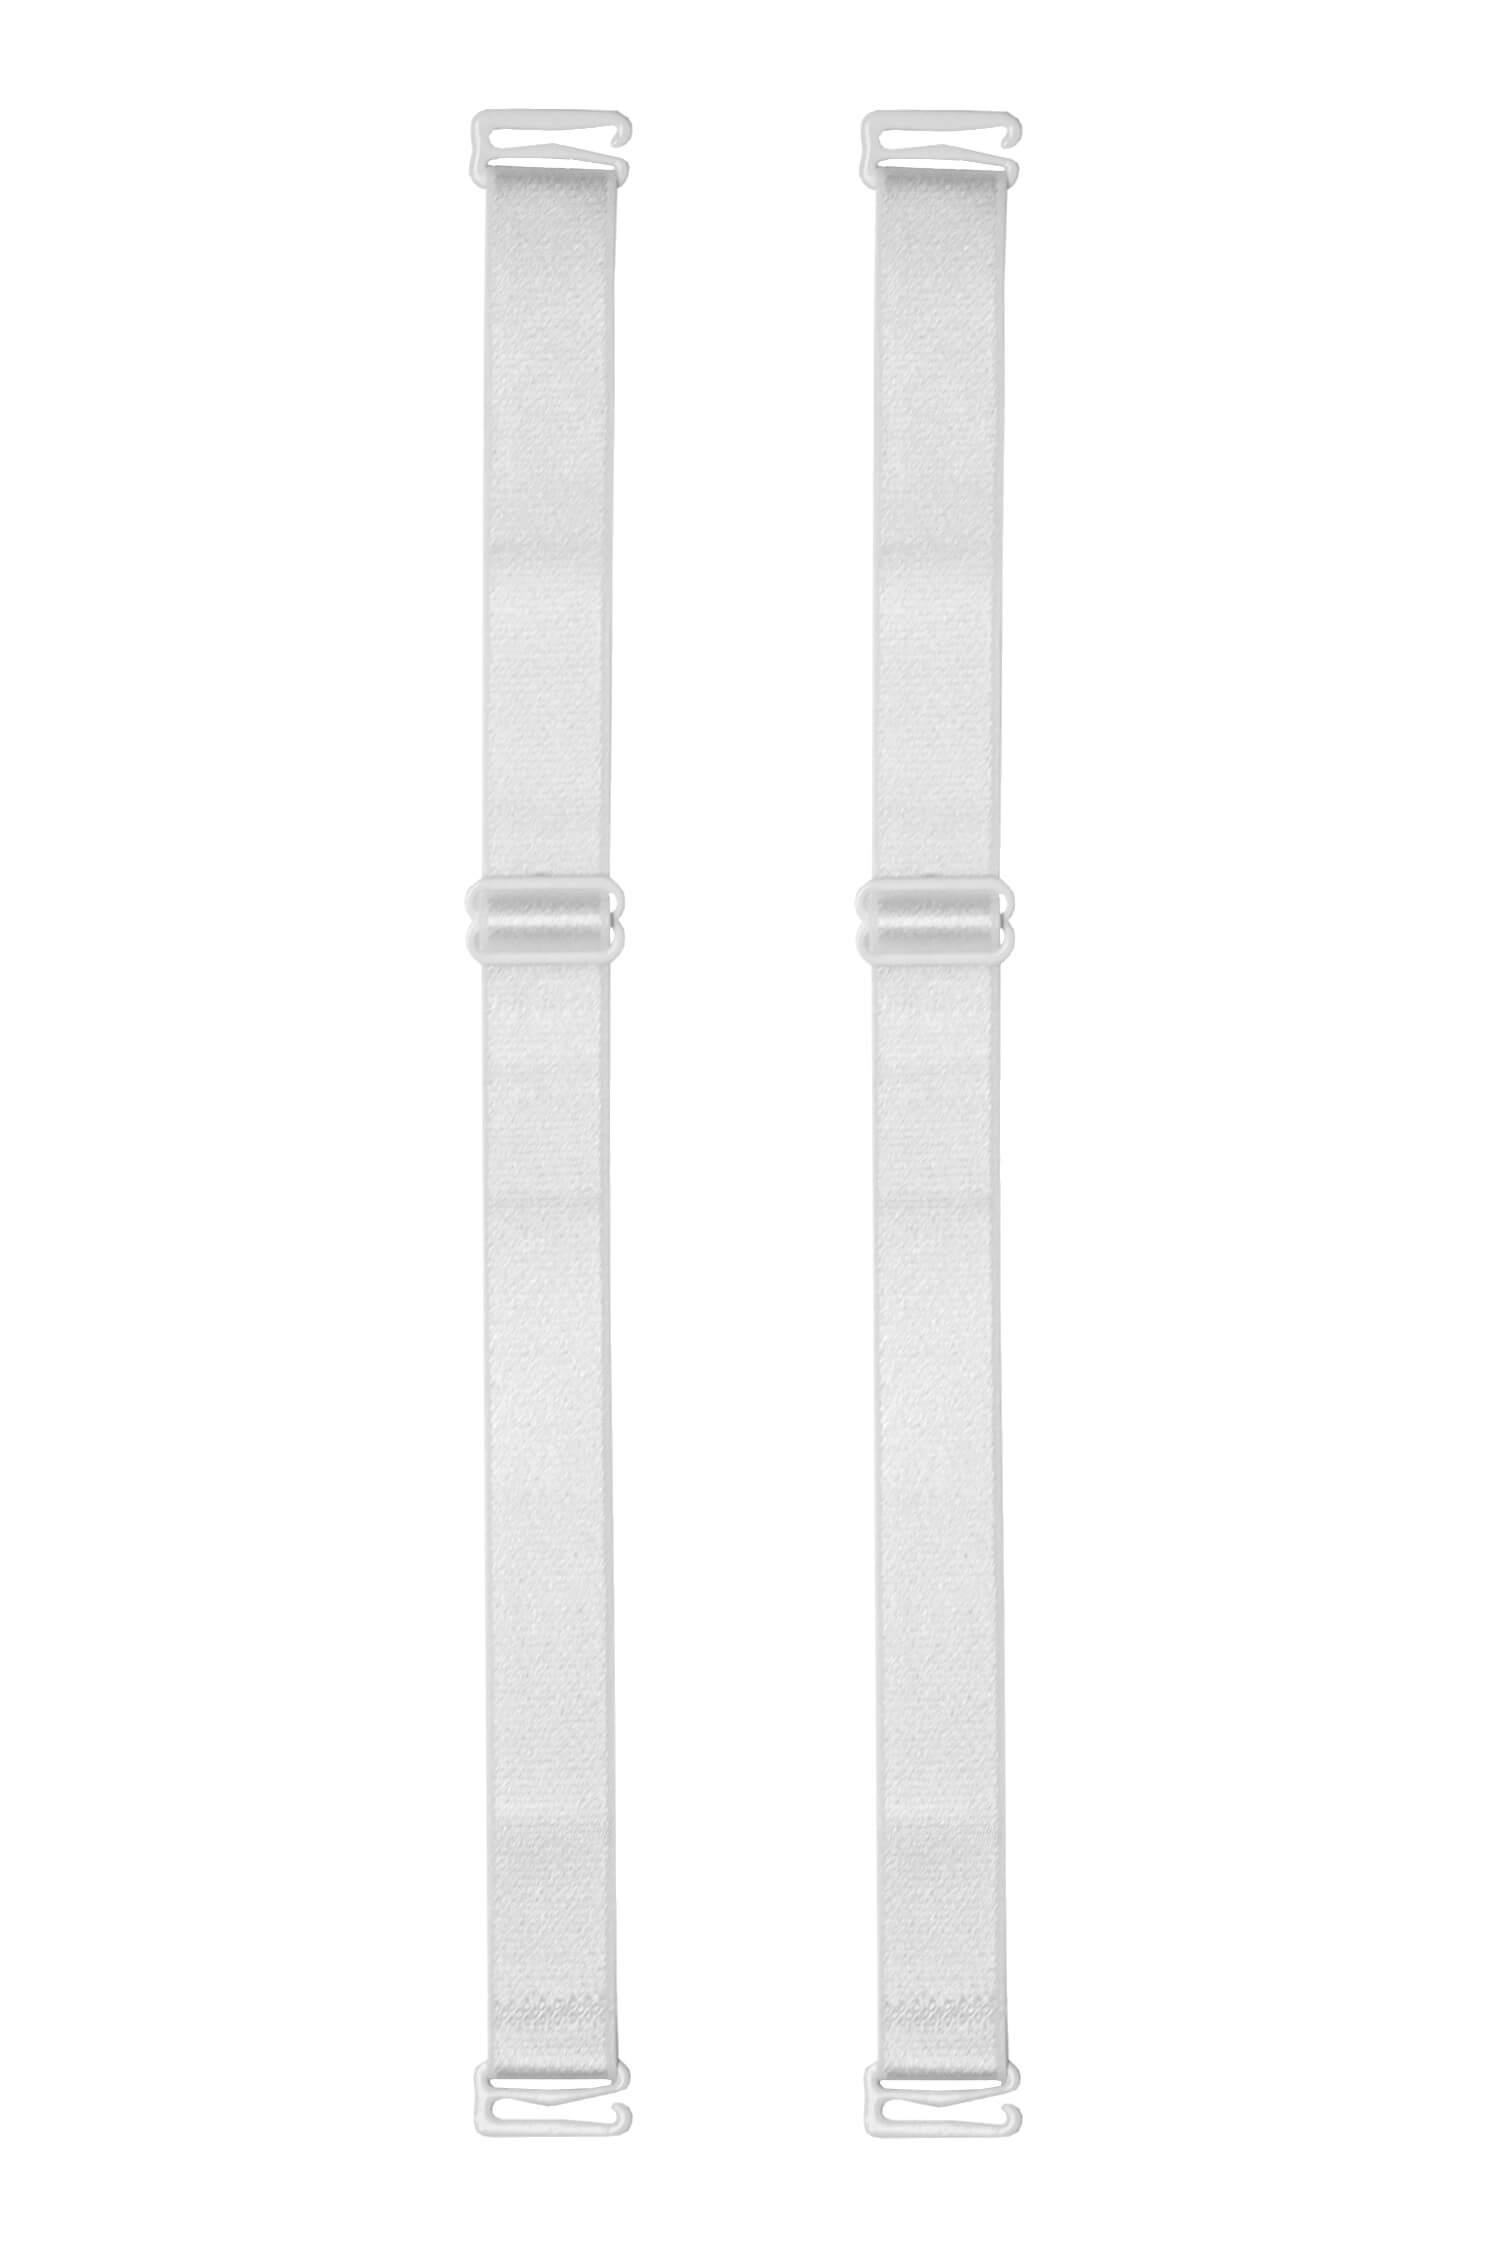 18 mm - široká náhradní ramínka k podprsence bílá